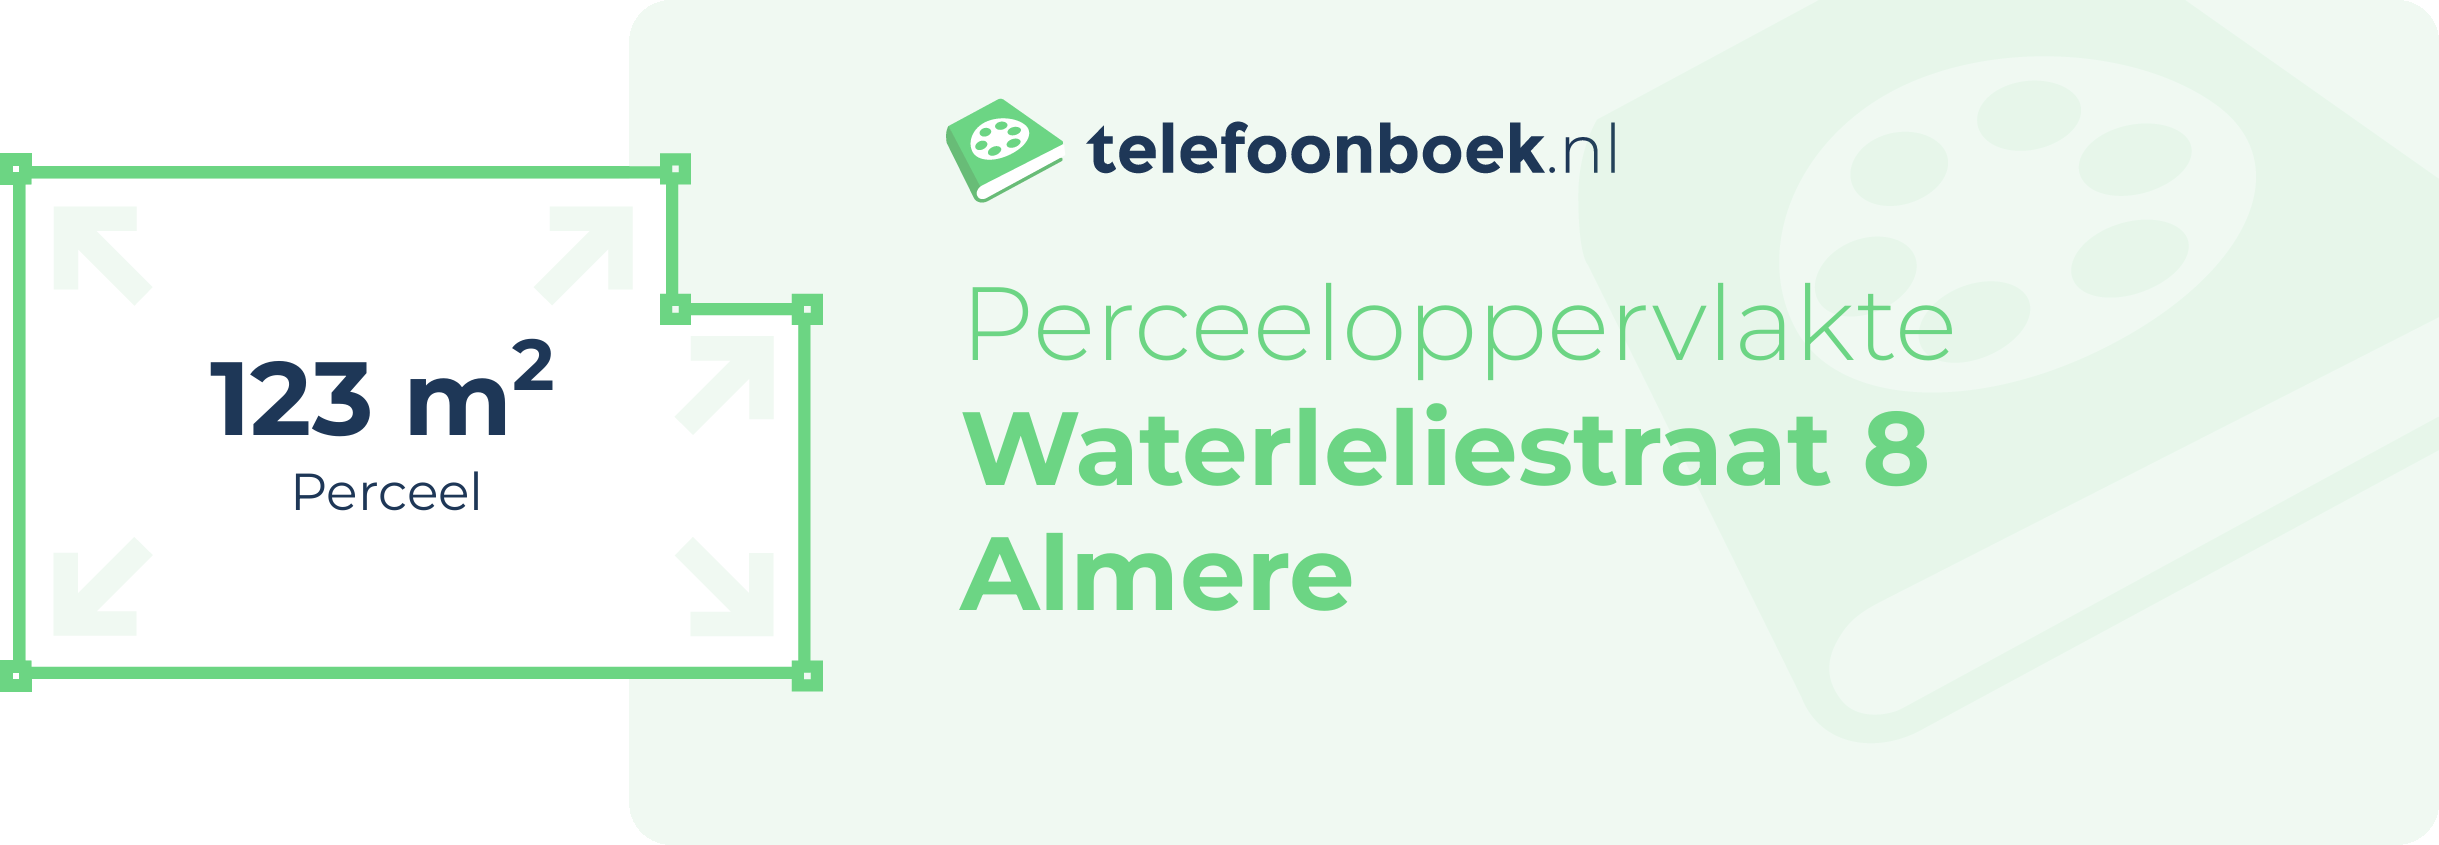 Perceeloppervlakte Waterleliestraat 8 Almere